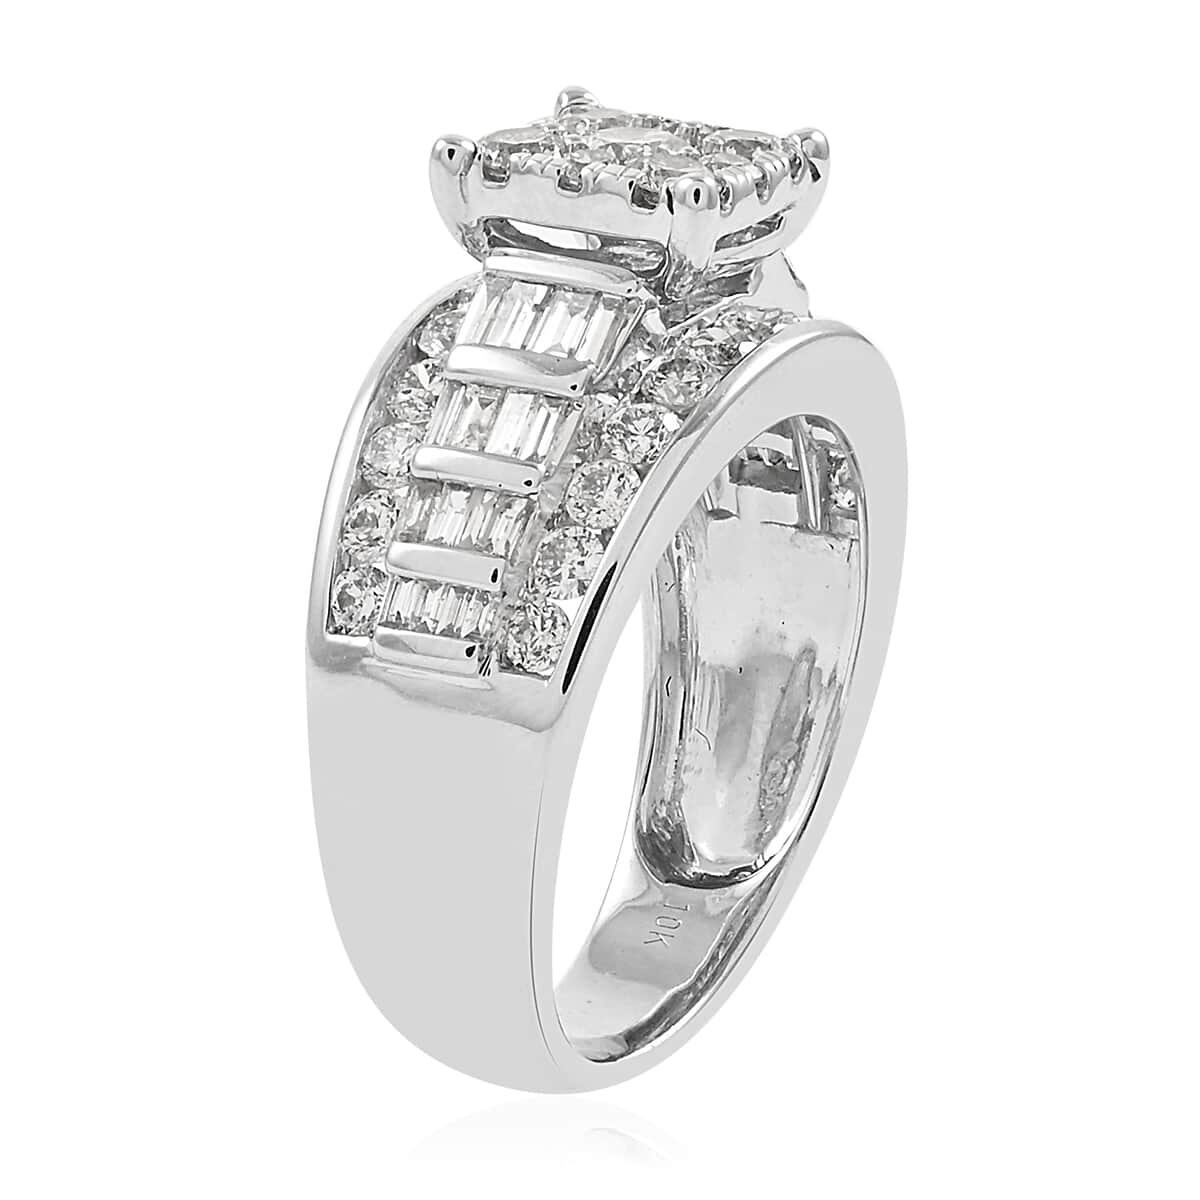 10K White Gold Diamond G-H I1-I2 Ring (Size 6.0) 7.70 Grams 2.00 ctw image number 3